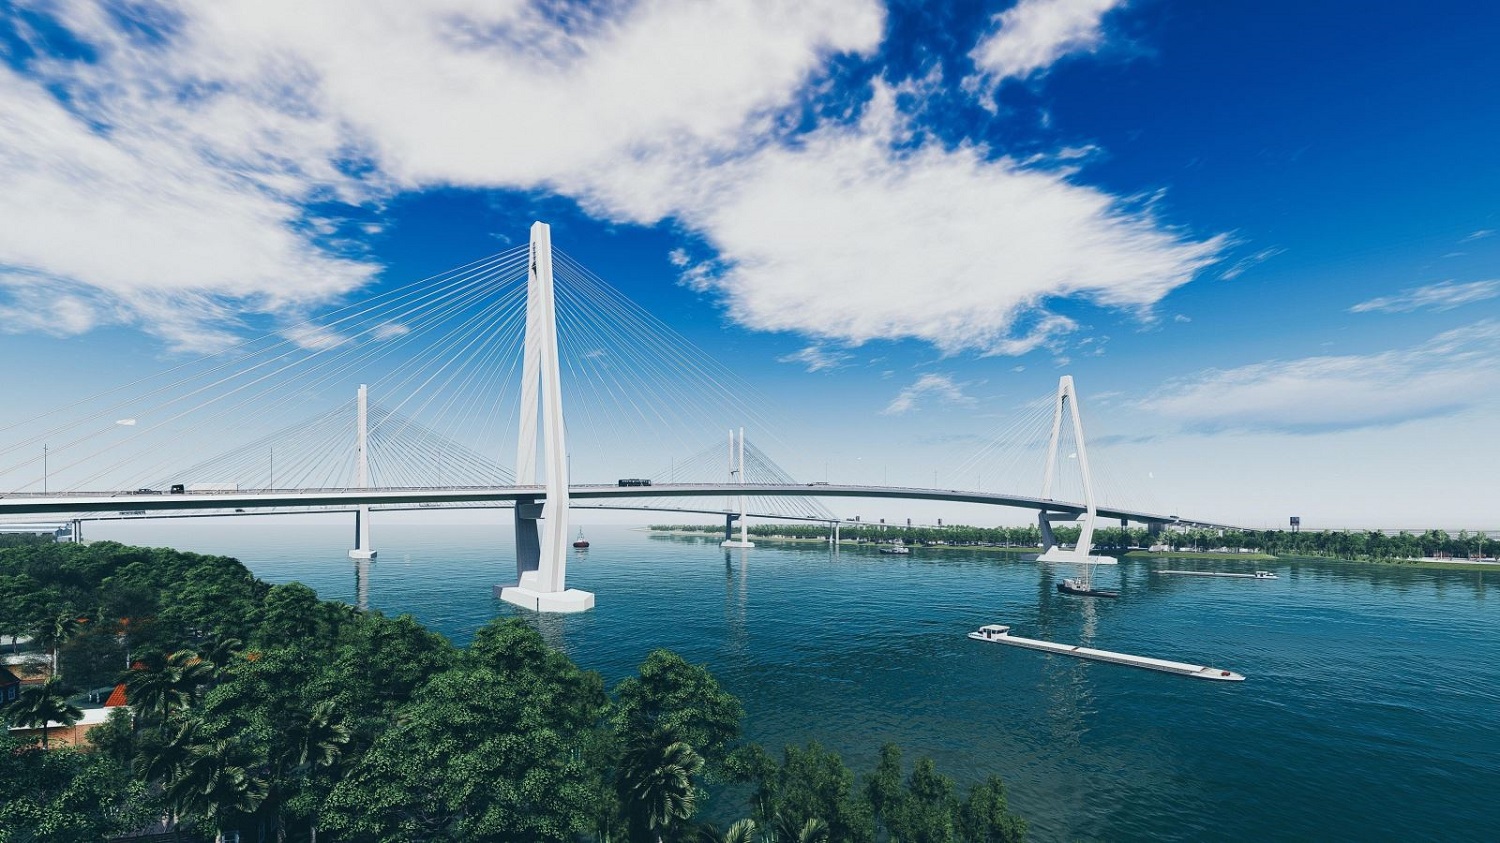 Khám phá Cầu Mỹ Thuận, cầu dây văng đầu tiên tại Việt Nam 4